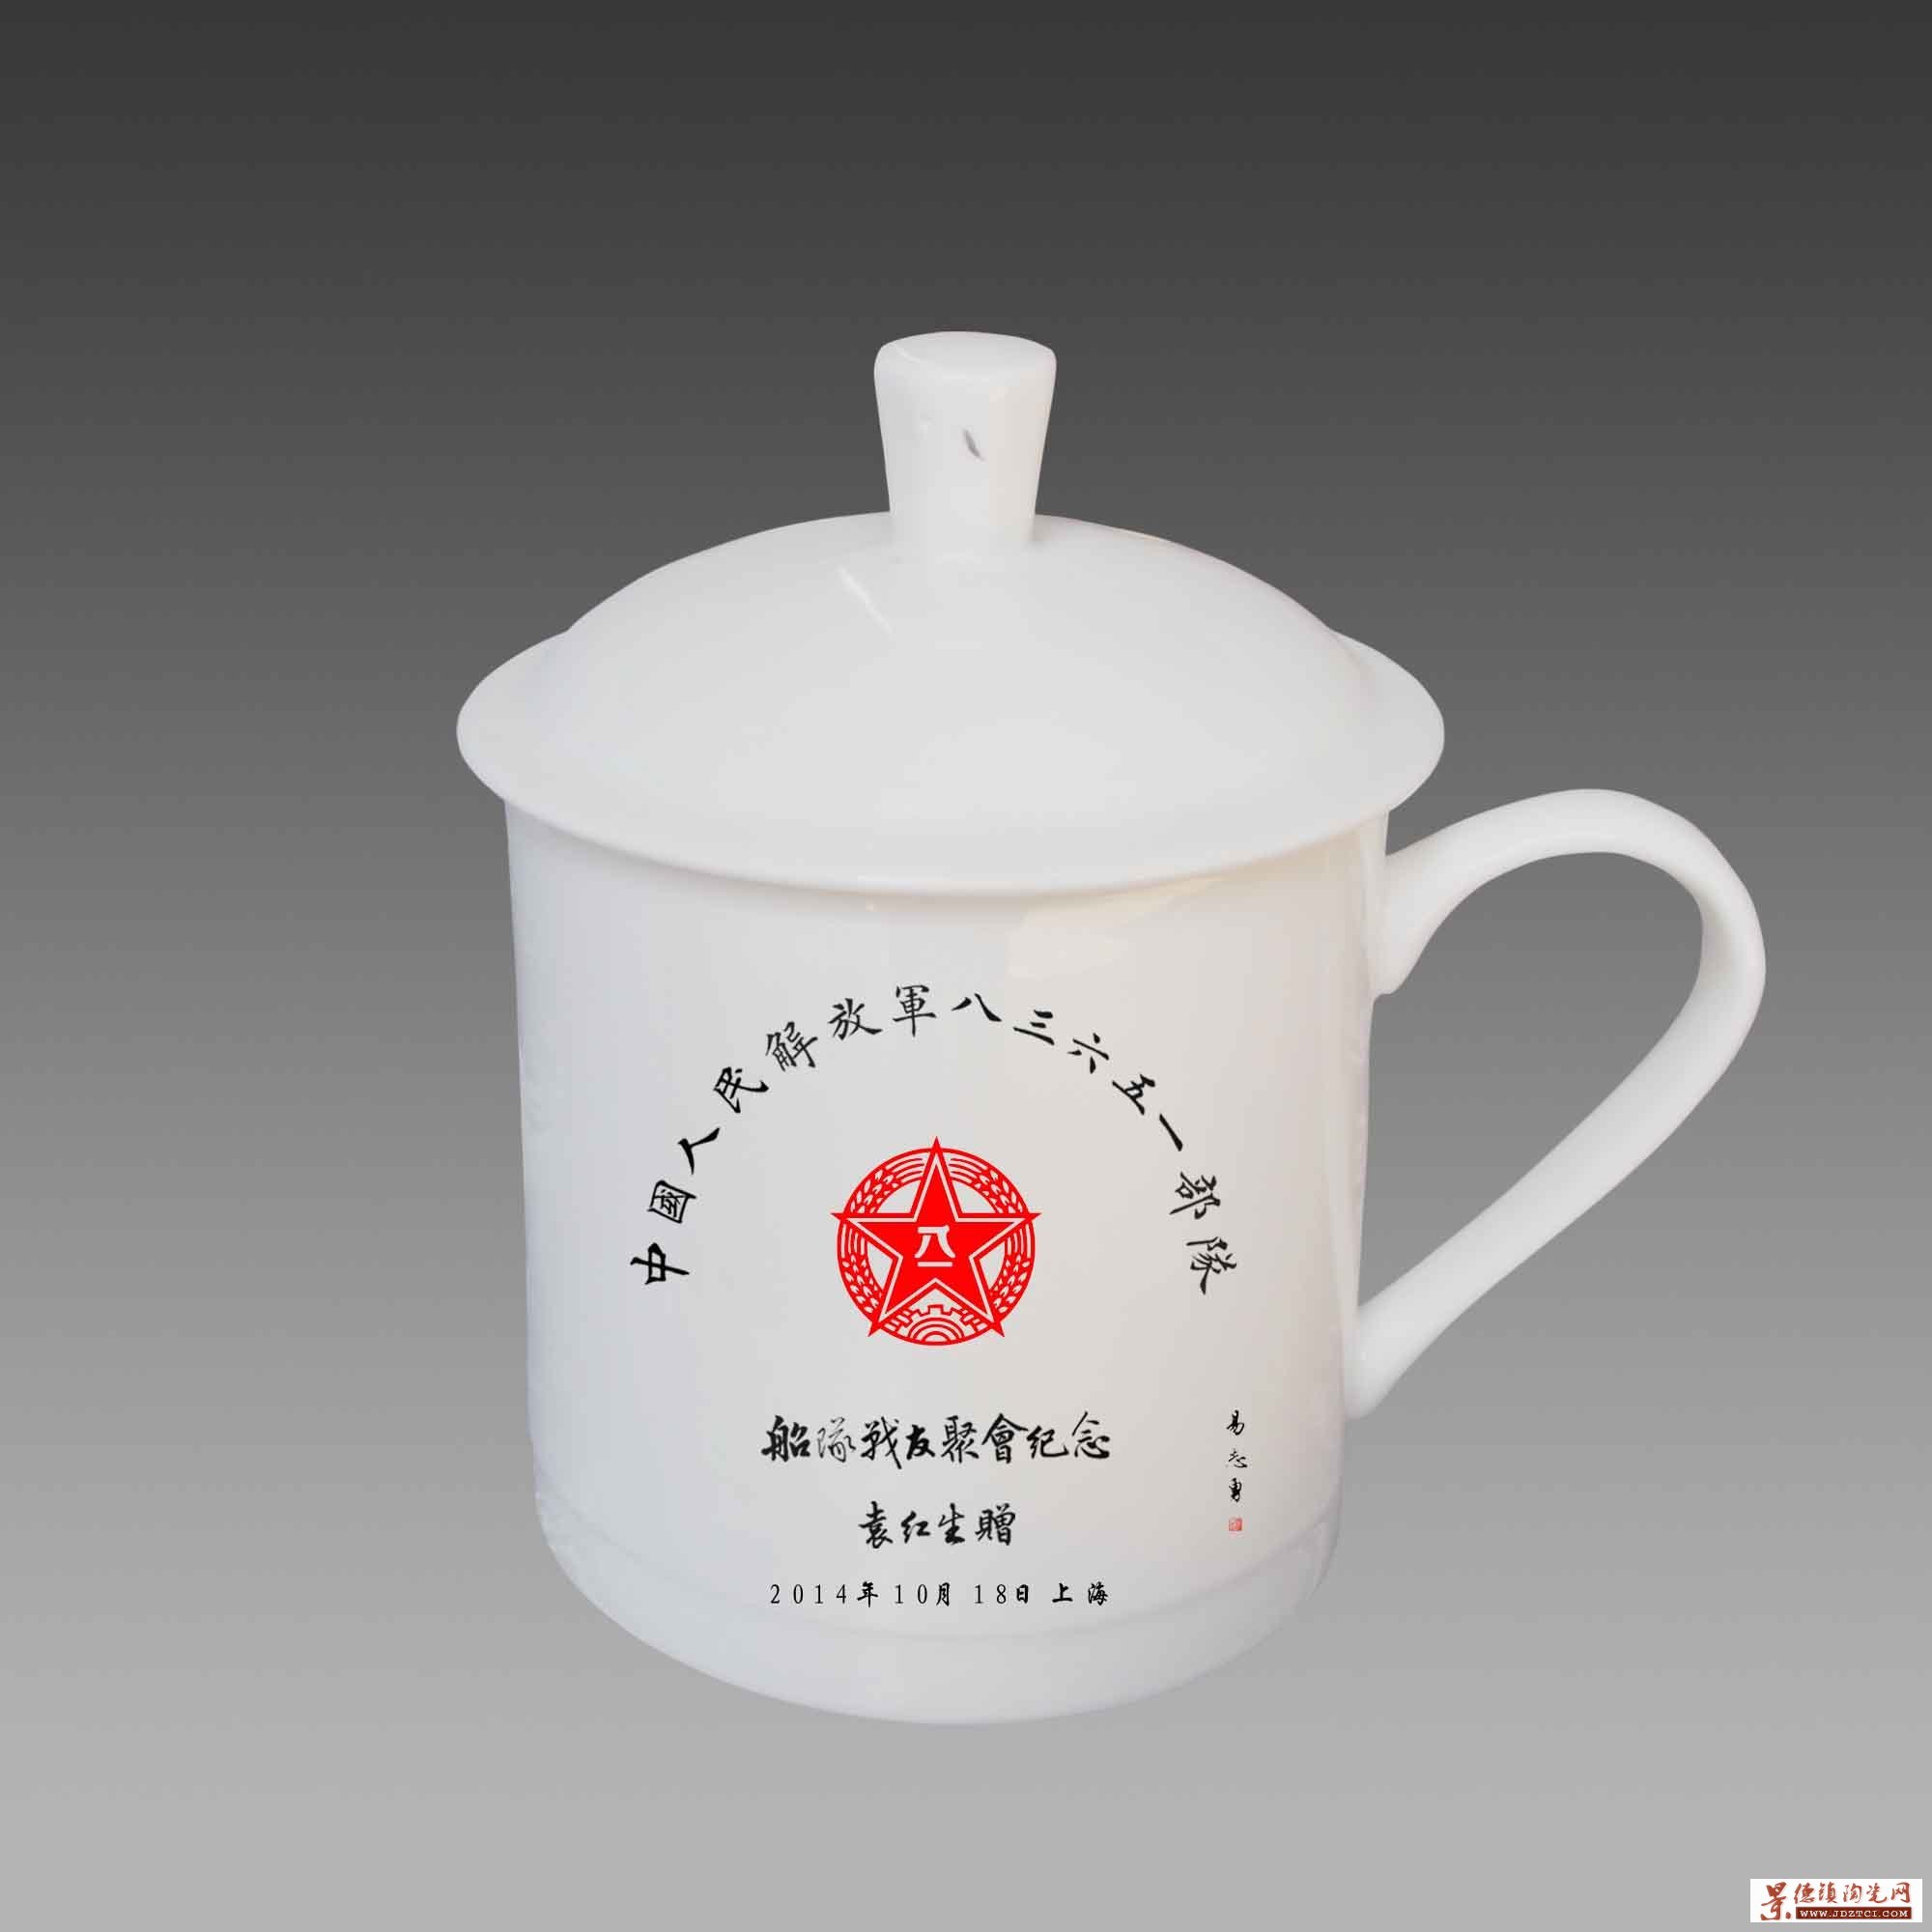 会议礼品骨瓷瓷茶杯定制